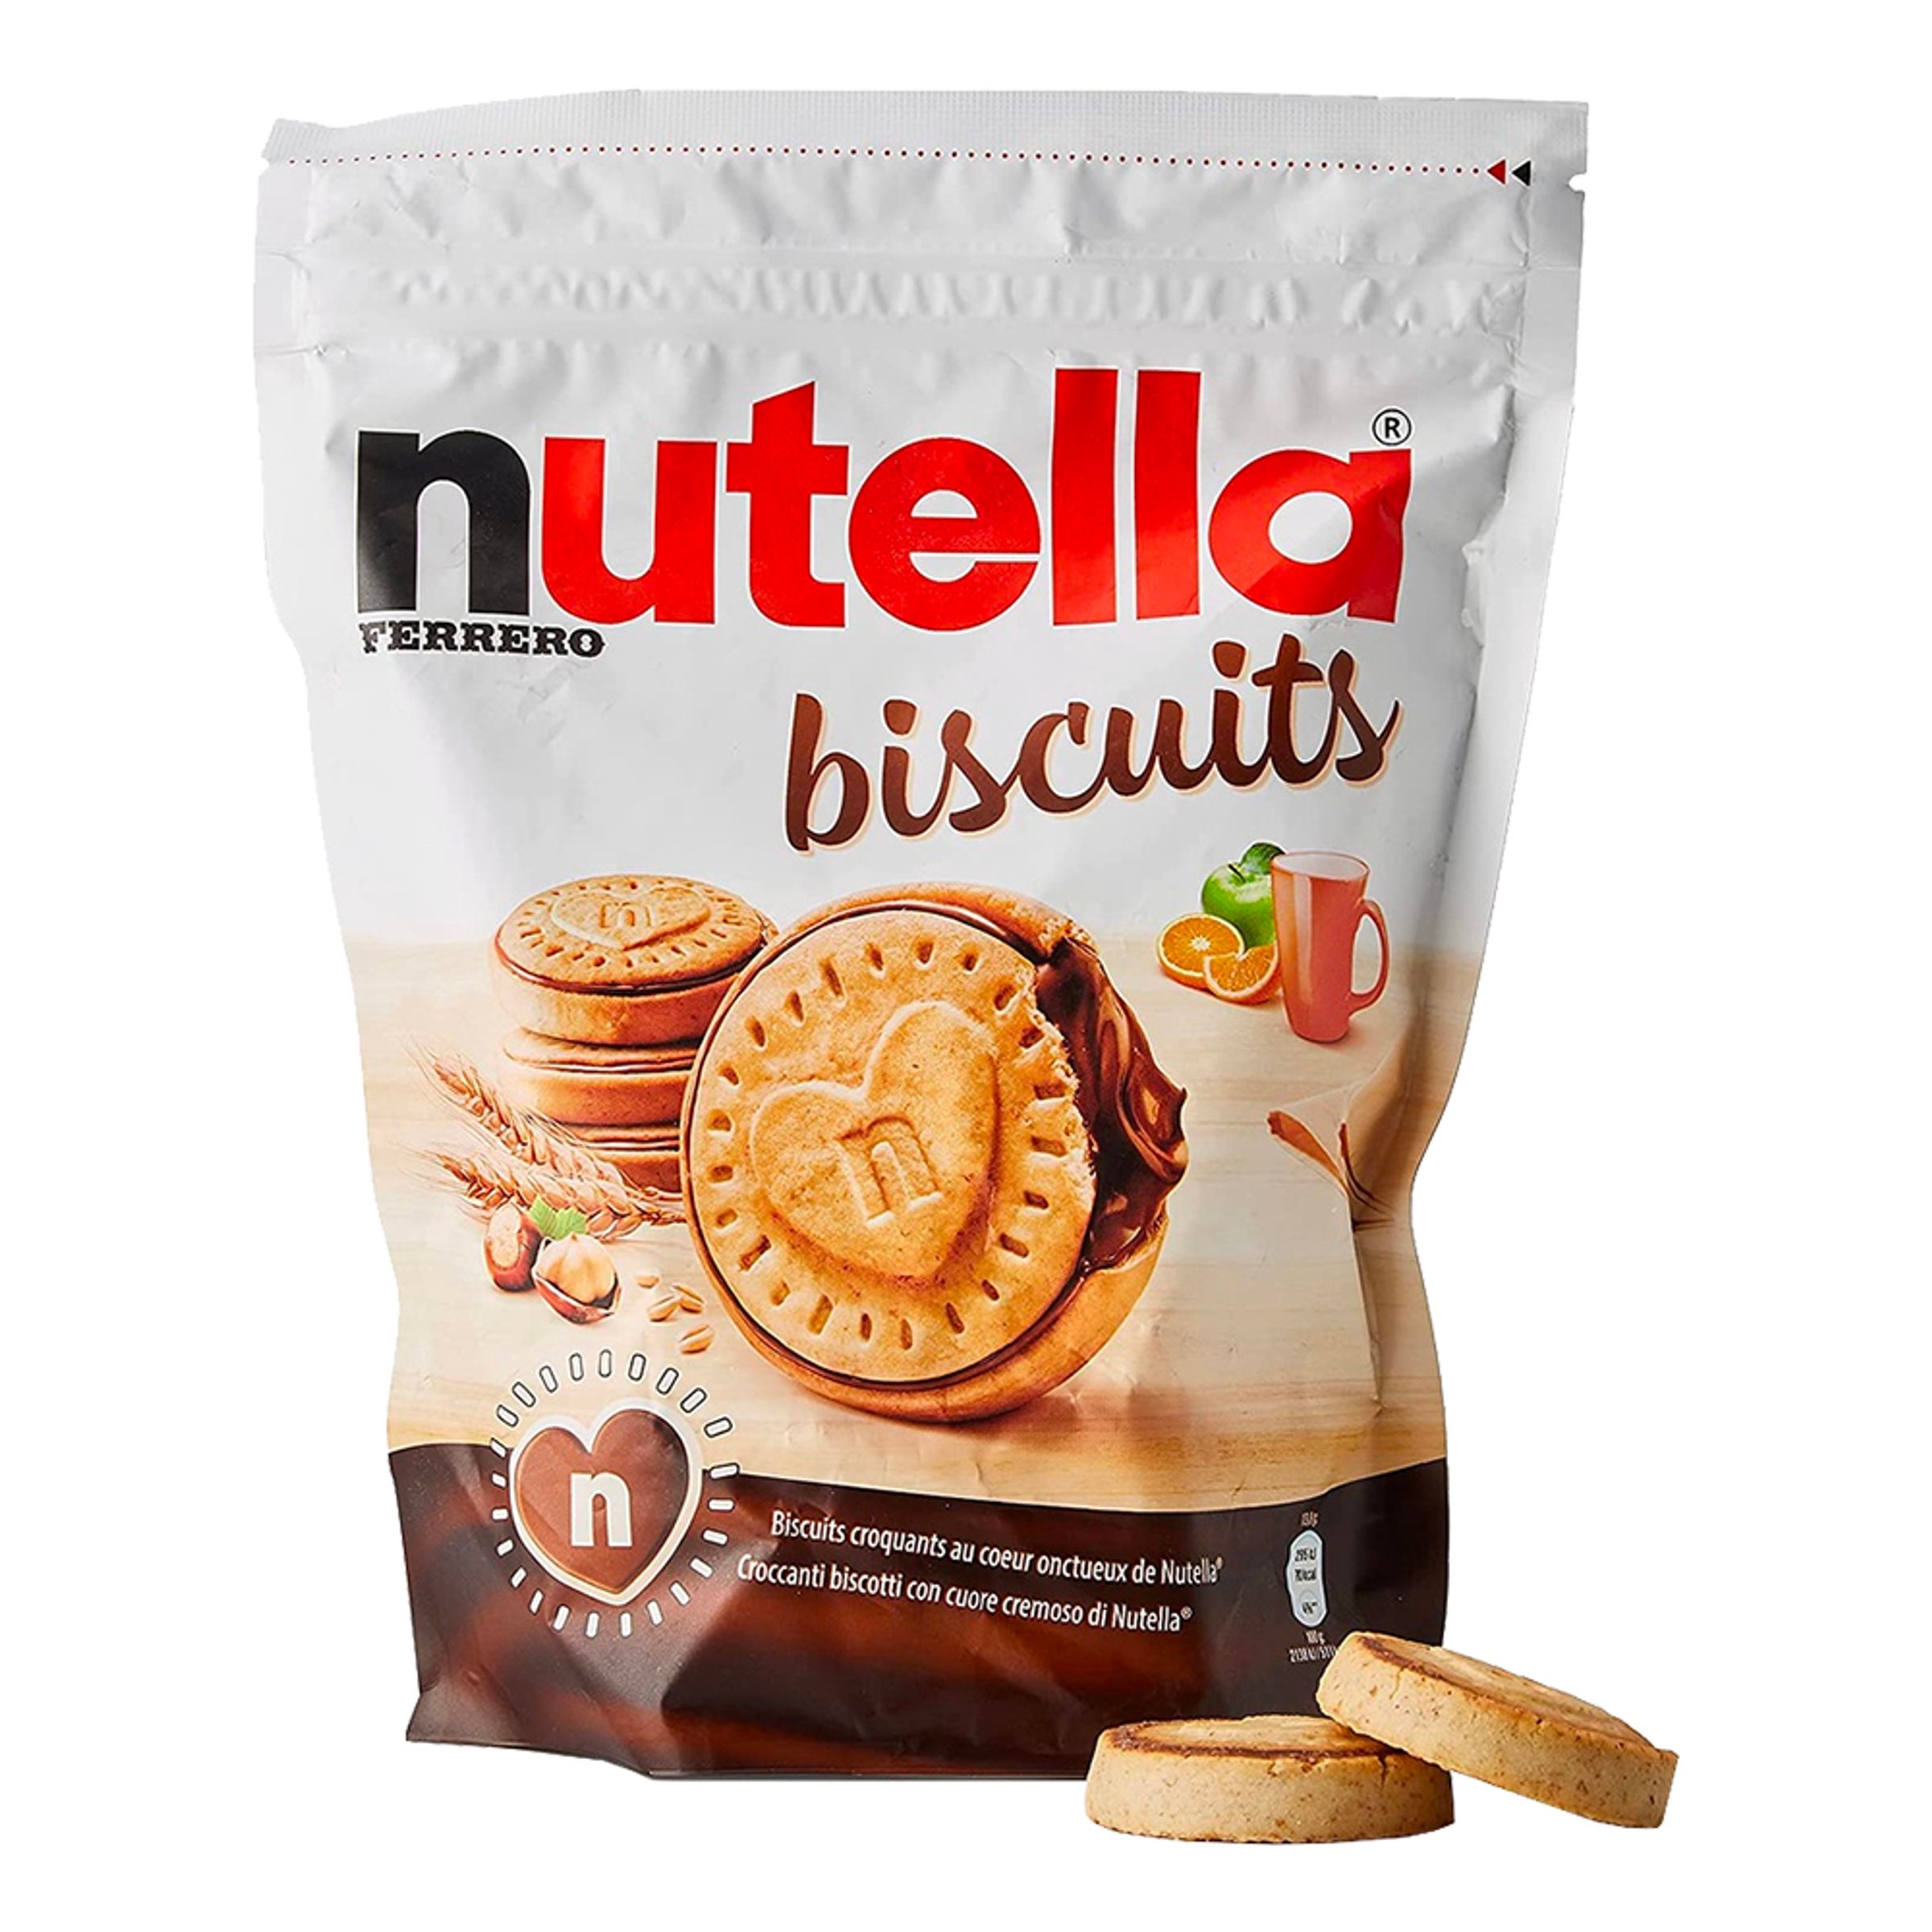 Nutella Biscuit Chokladkakor - 193 gram